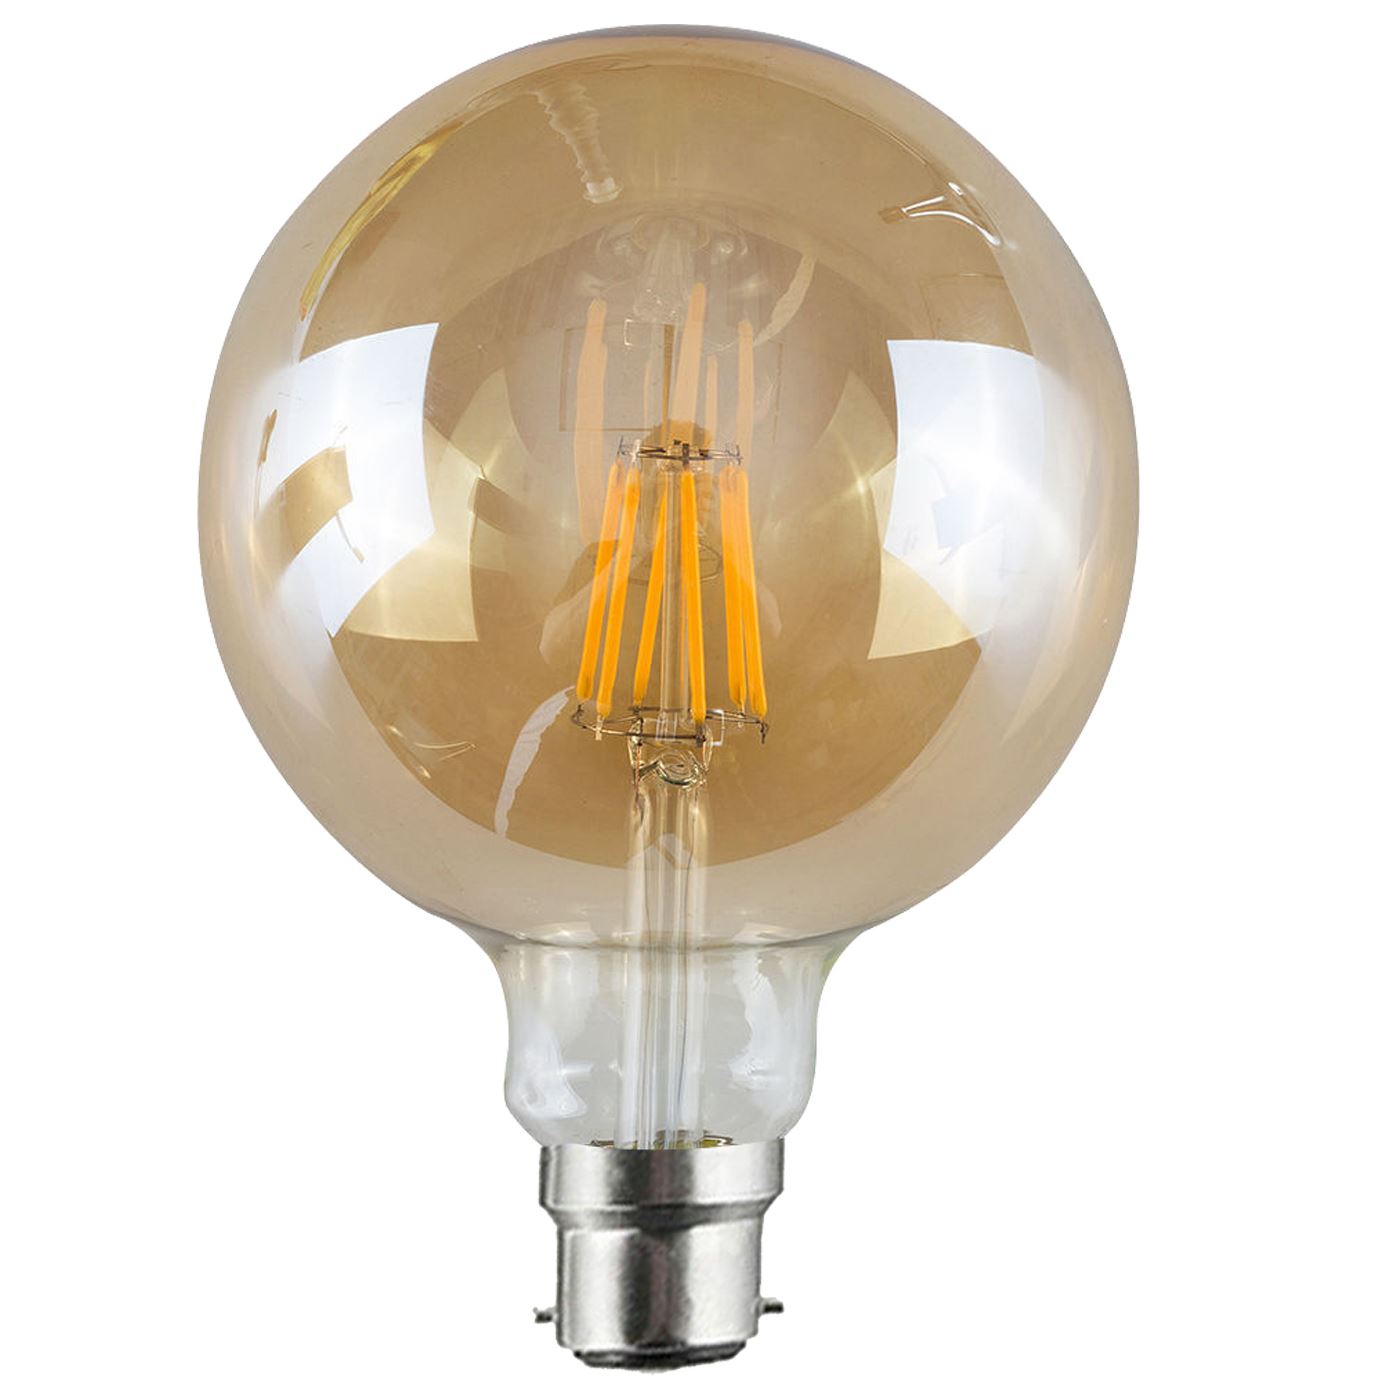 B22 8W Vintage-Industrie G125 Edison Licht LED Glühbirne Bernstein Lampe